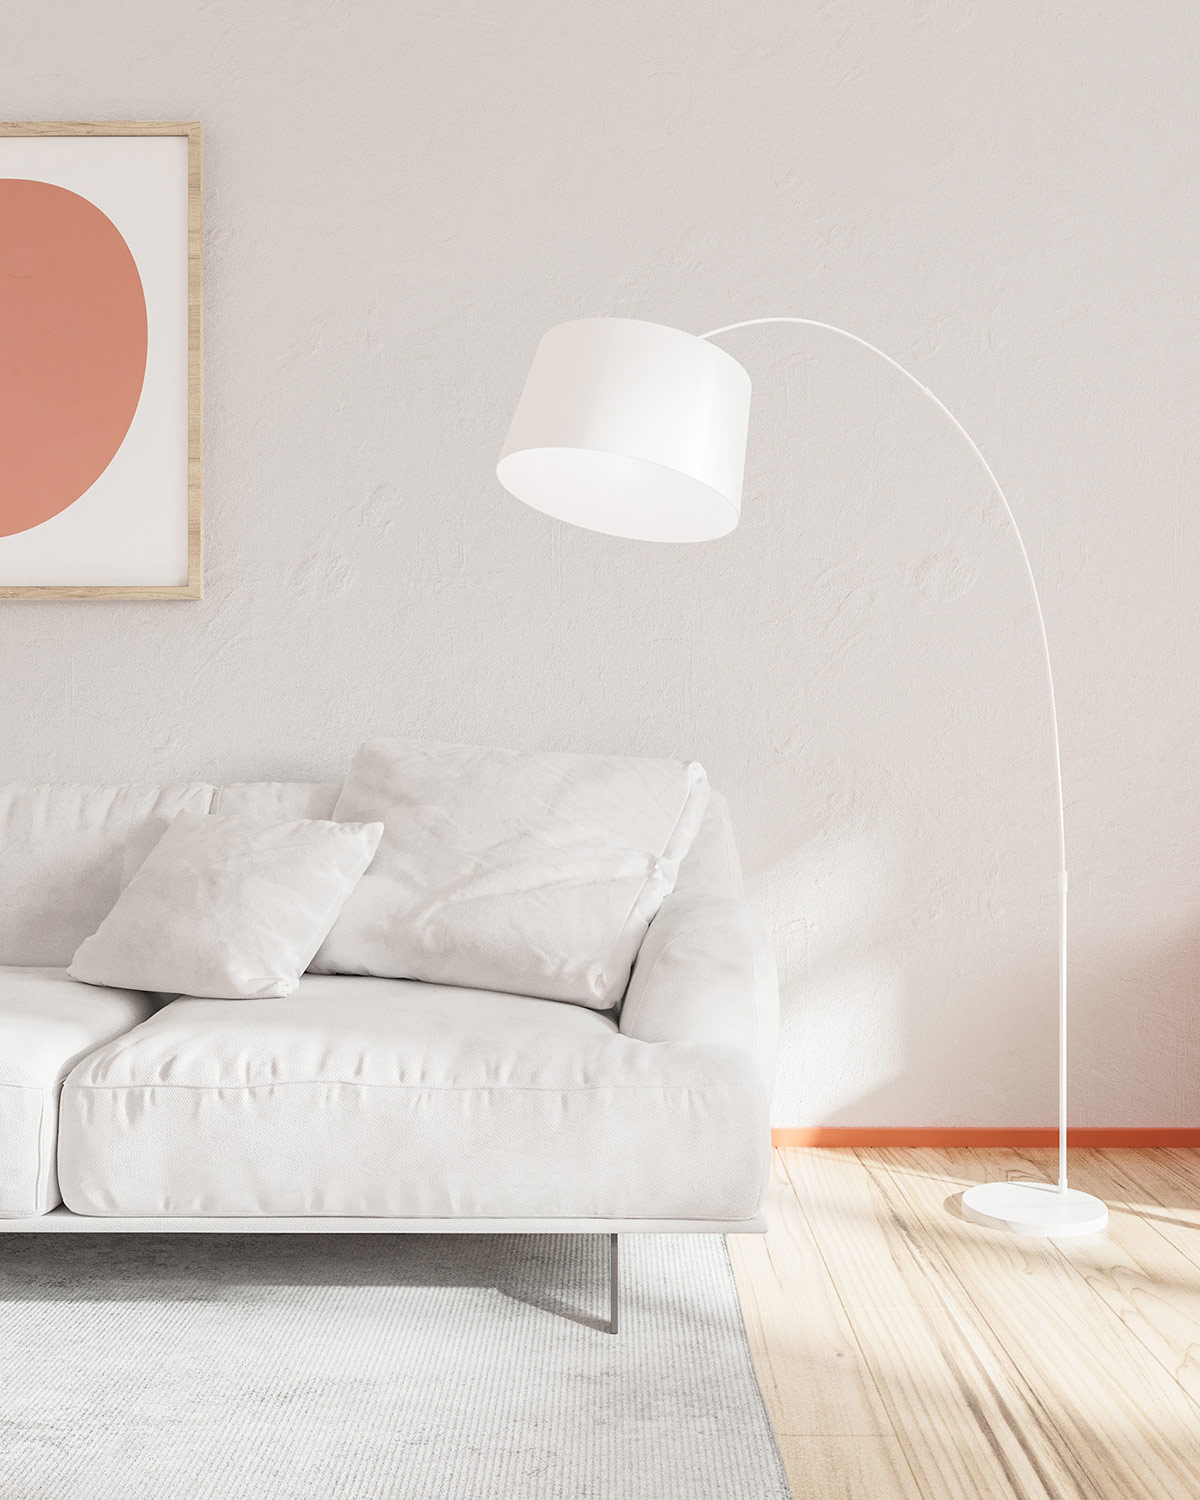 Hình ảnh đèn sàn màu trắng trong phòng khách, cạnh đó là sofa trắng, chân tường sơn màu cam